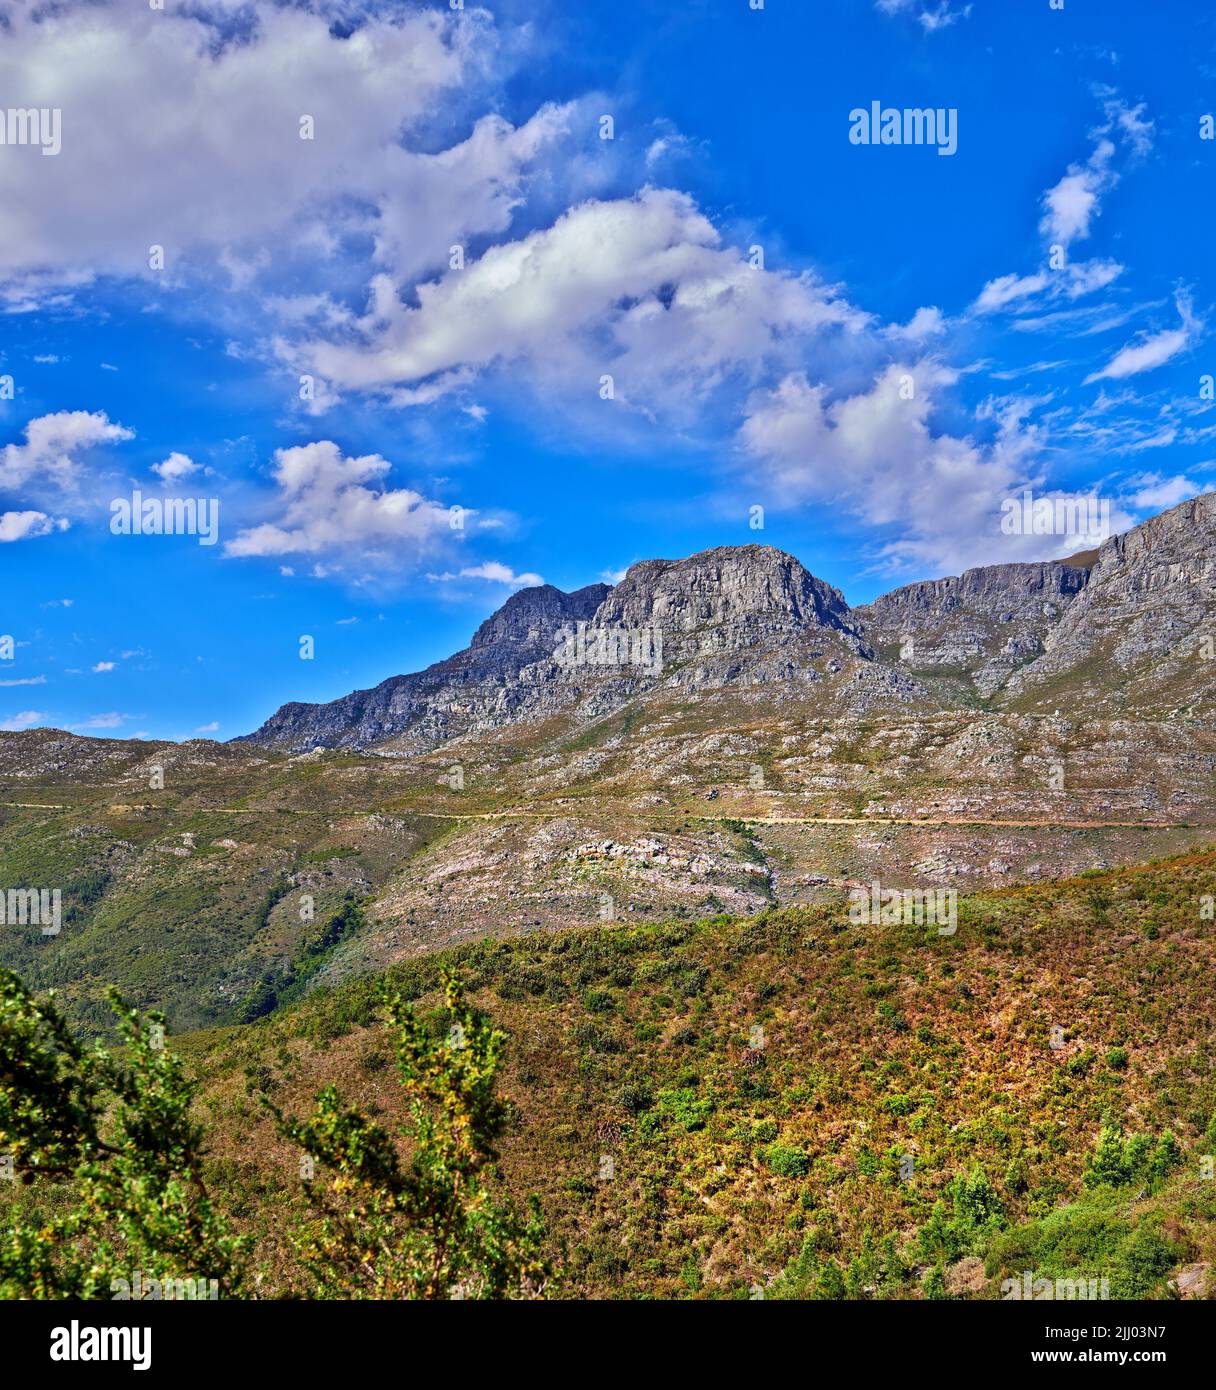 Bella montagna in tranquilla terra rocciosa in una giornata di sole a Città del Capo. Terra vibrante con lussureggianti cespugli verdi e piante che crescono con armonia nella natura Foto Stock